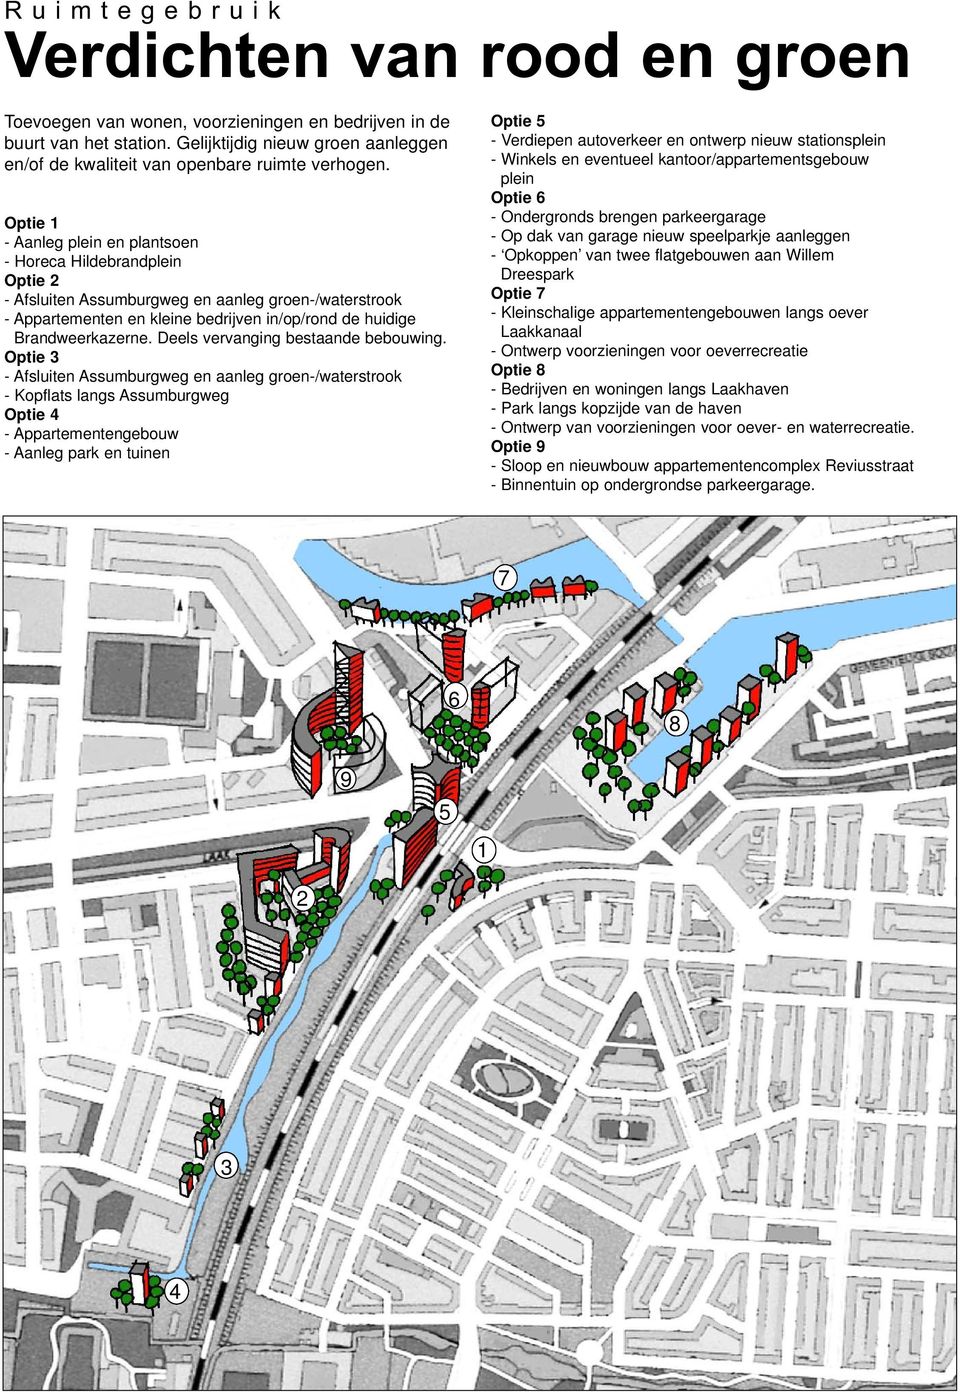 Optie 1 - Aanleg plein en plantsoen - Horeca Hildebrandplein Optie 2 - Afsluiten Assumburgweg en aanleg groen-/waterstrook - Appartementen en kleine bedrijven in/op/rond de huidige Brandweerkazerne.